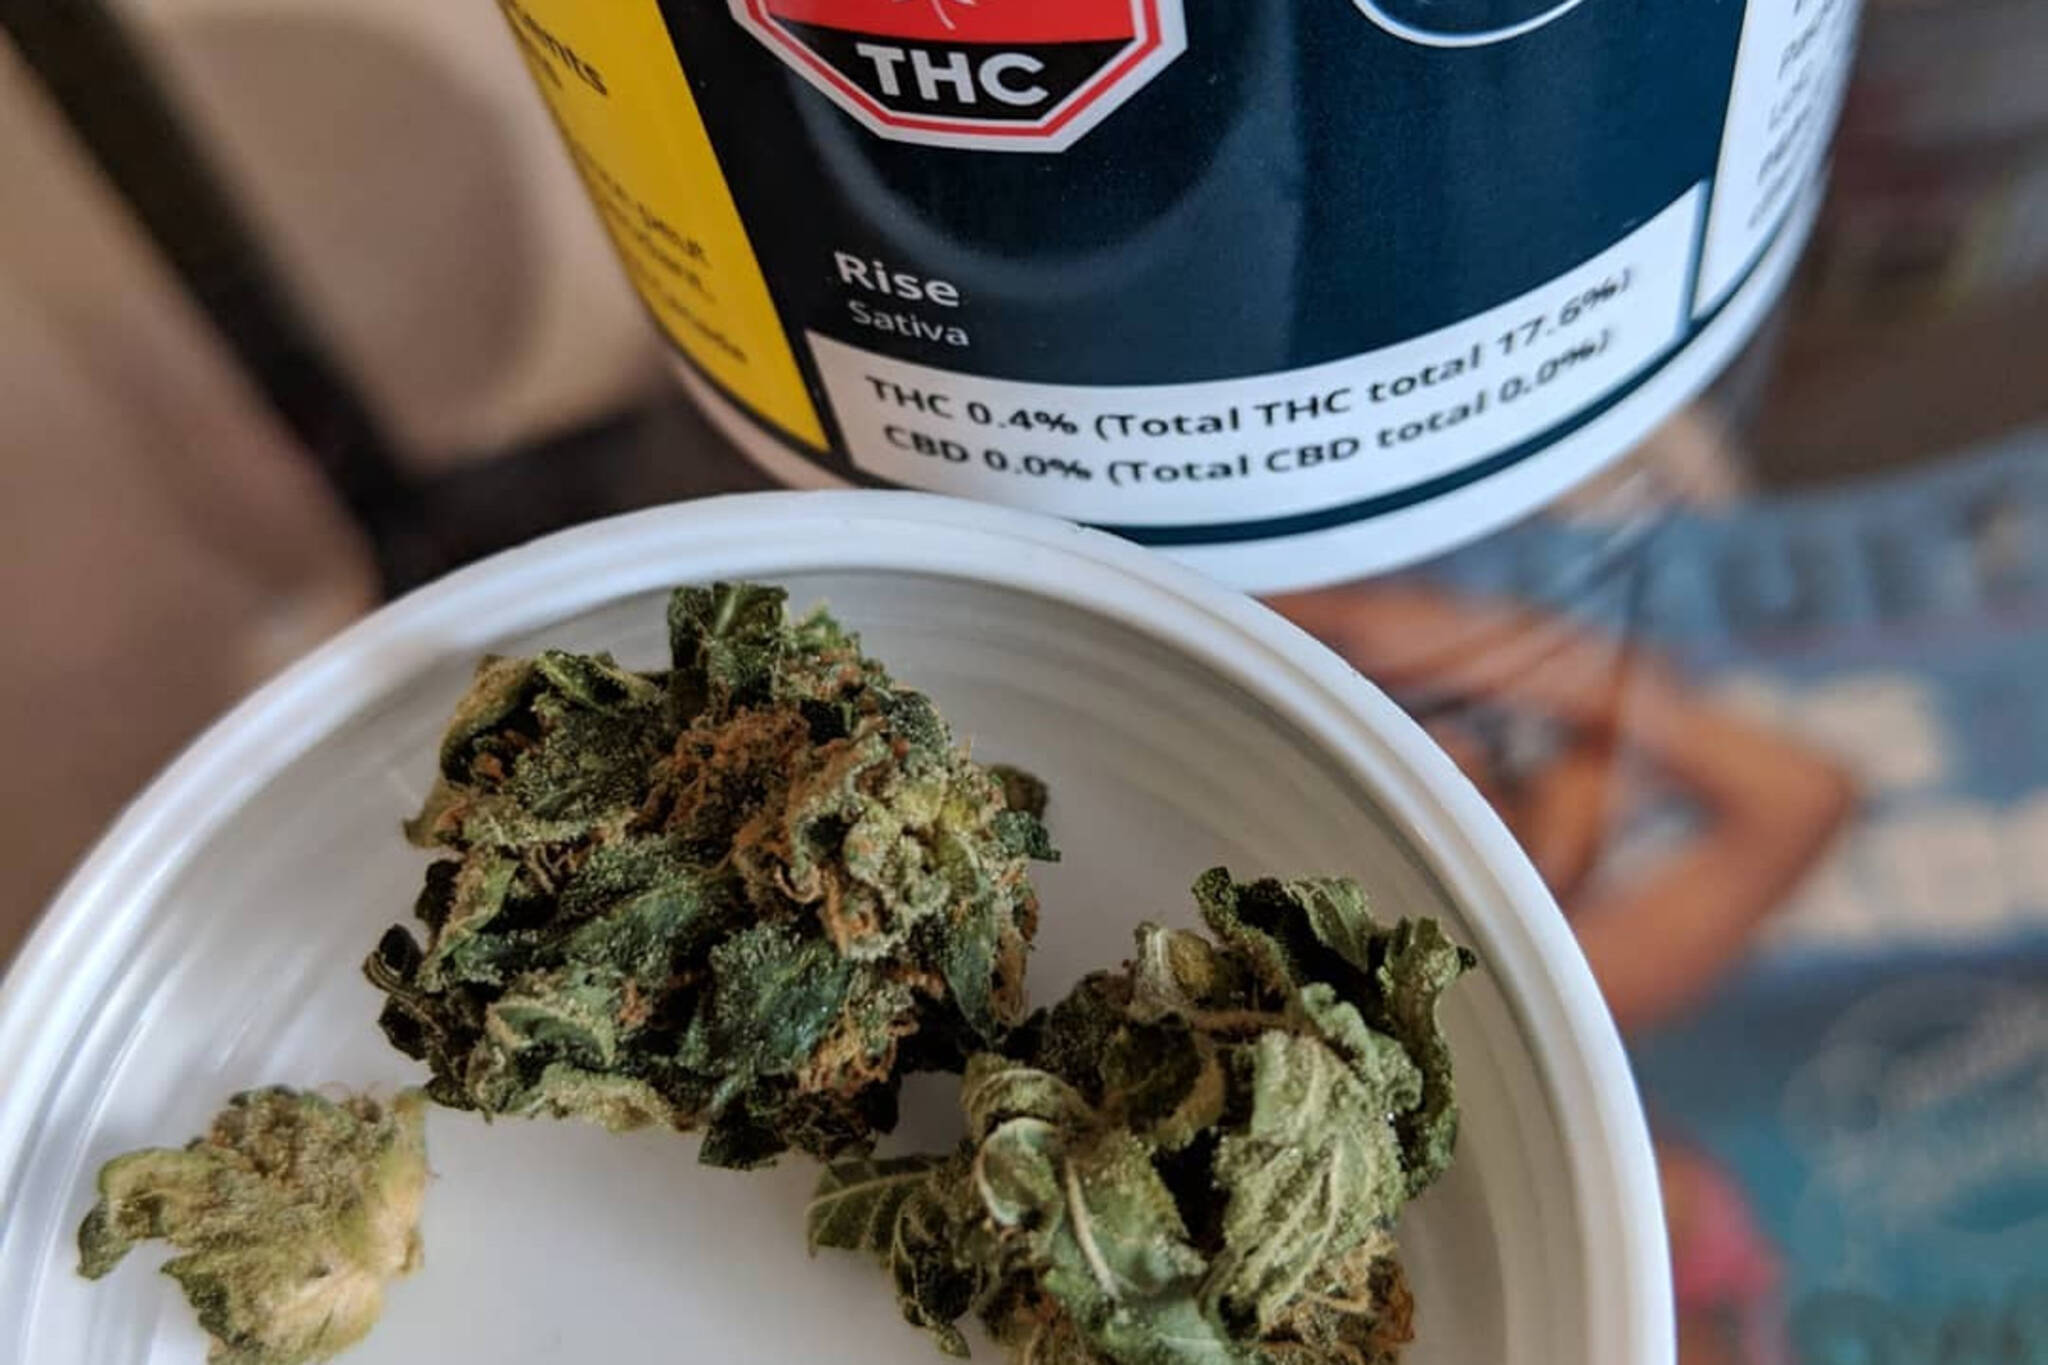 Ontario Cannabis delivery